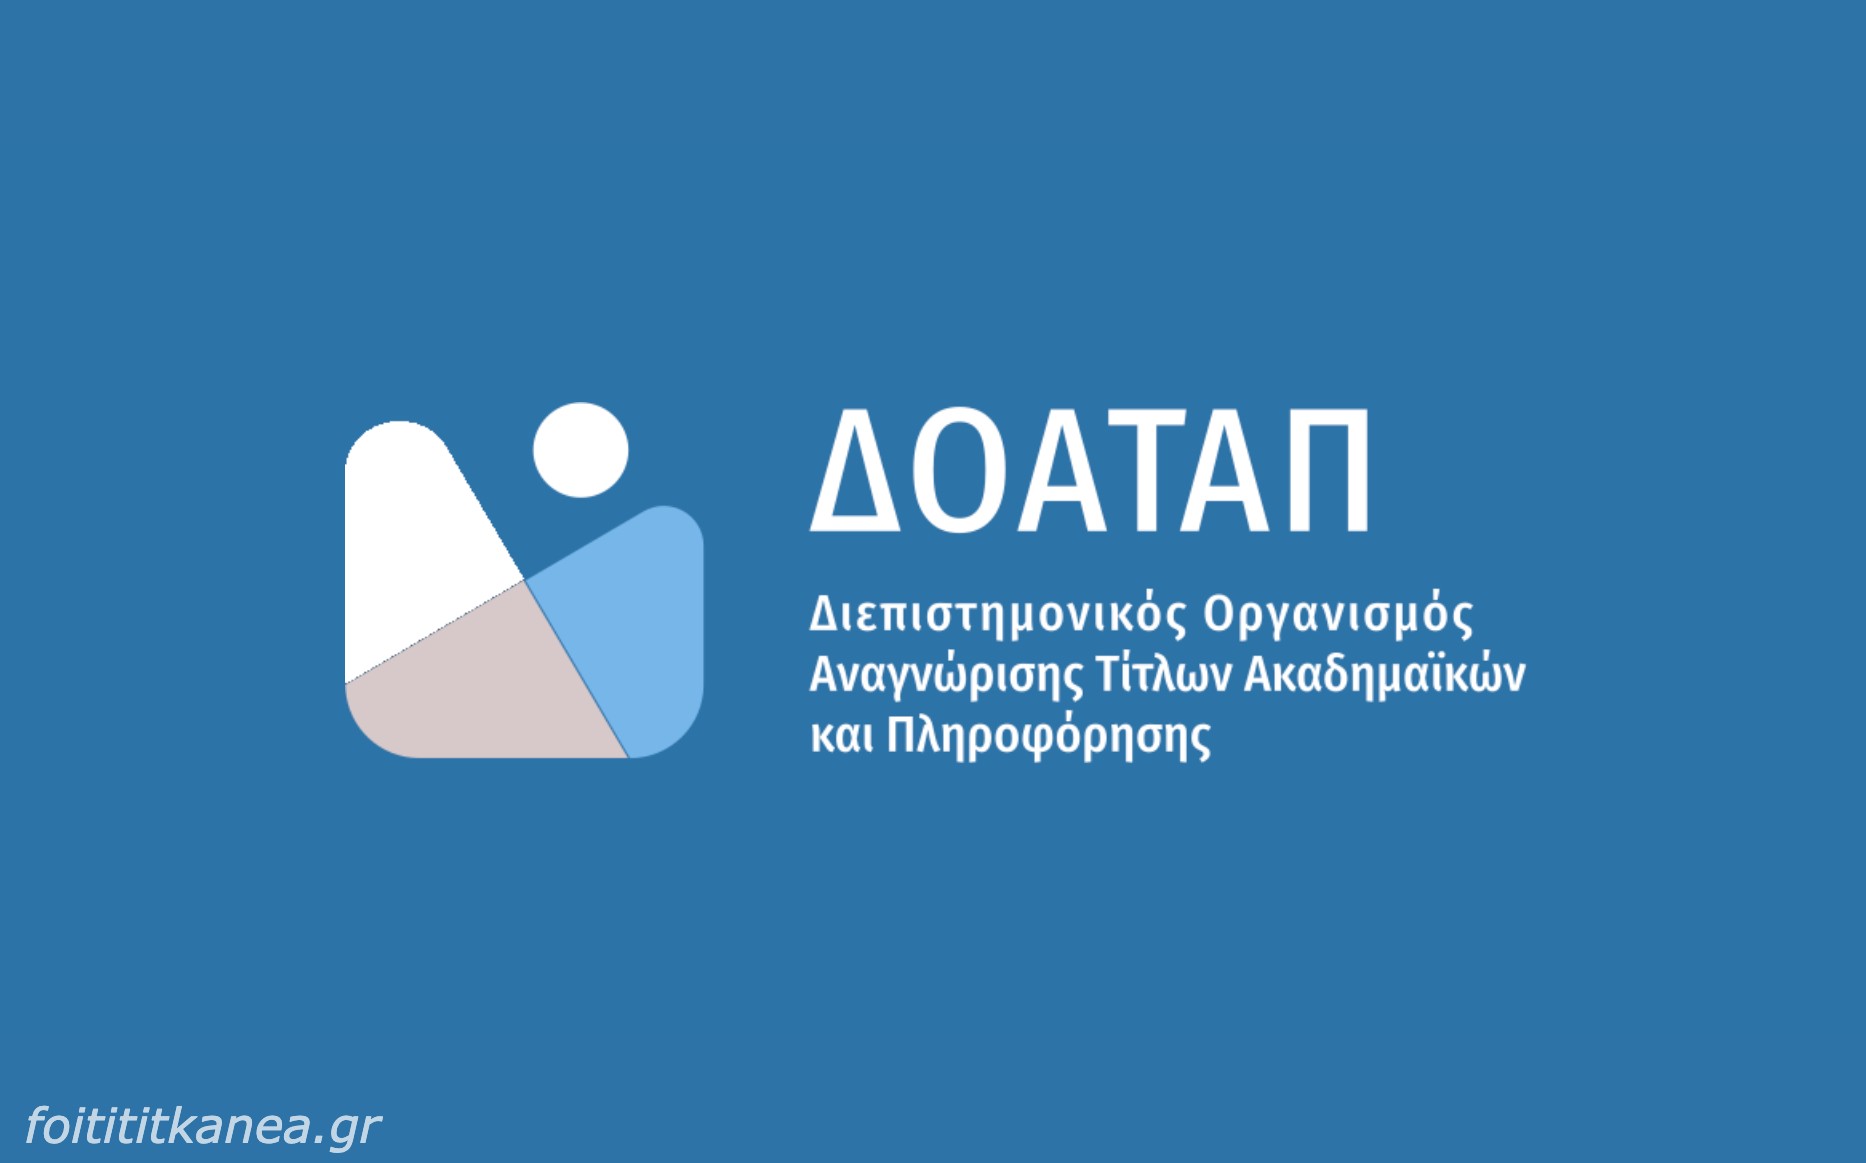  ΔΟΑΤΑΠ: Διαδικτυακό σεμινάριο για την Ακαδημαϊκή Αναγνώριση στο Ελληνικό Πανεπιστήμιο